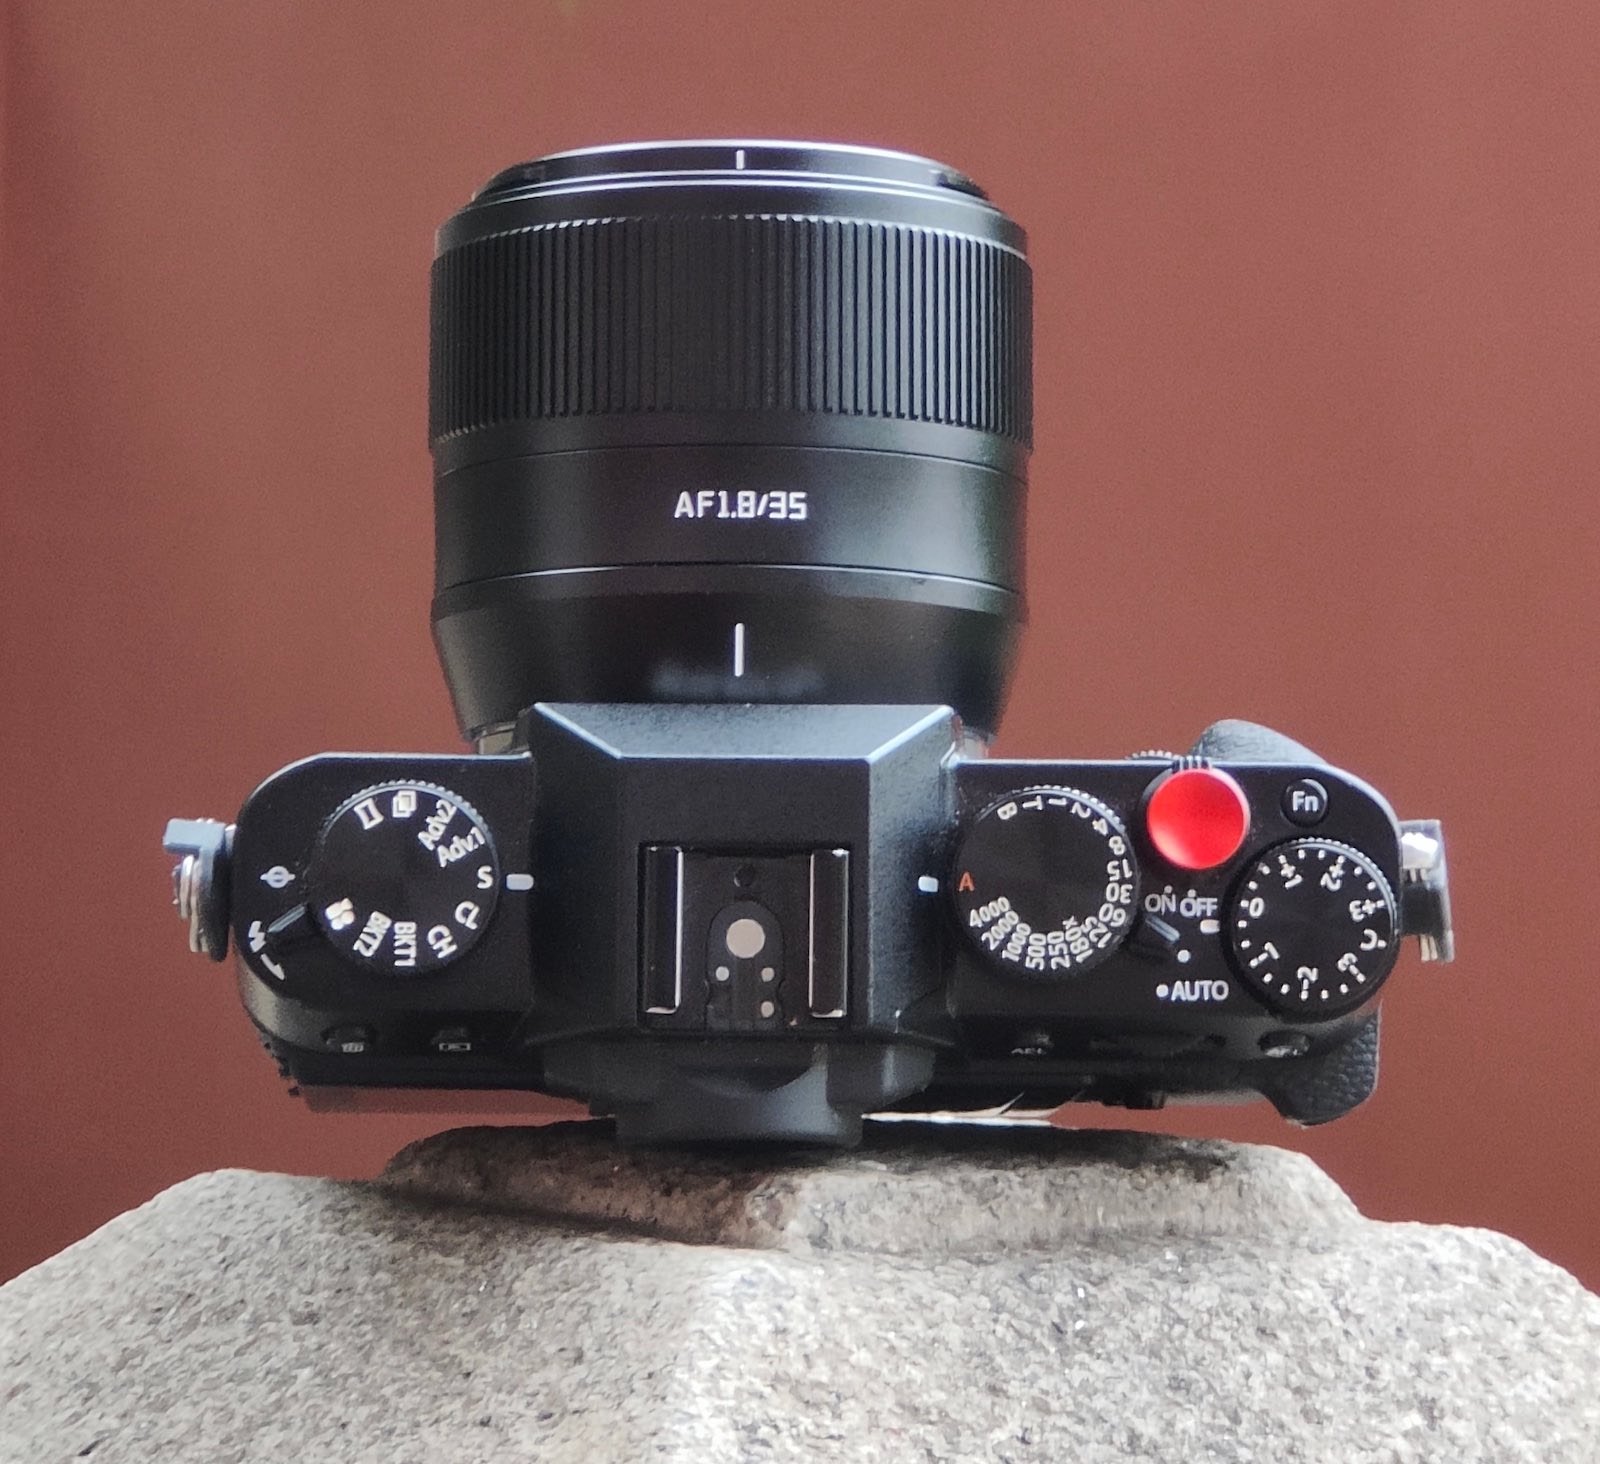 Additional information on the upcoming TTArtisan AF 35mm f/1.8 lens (E ...